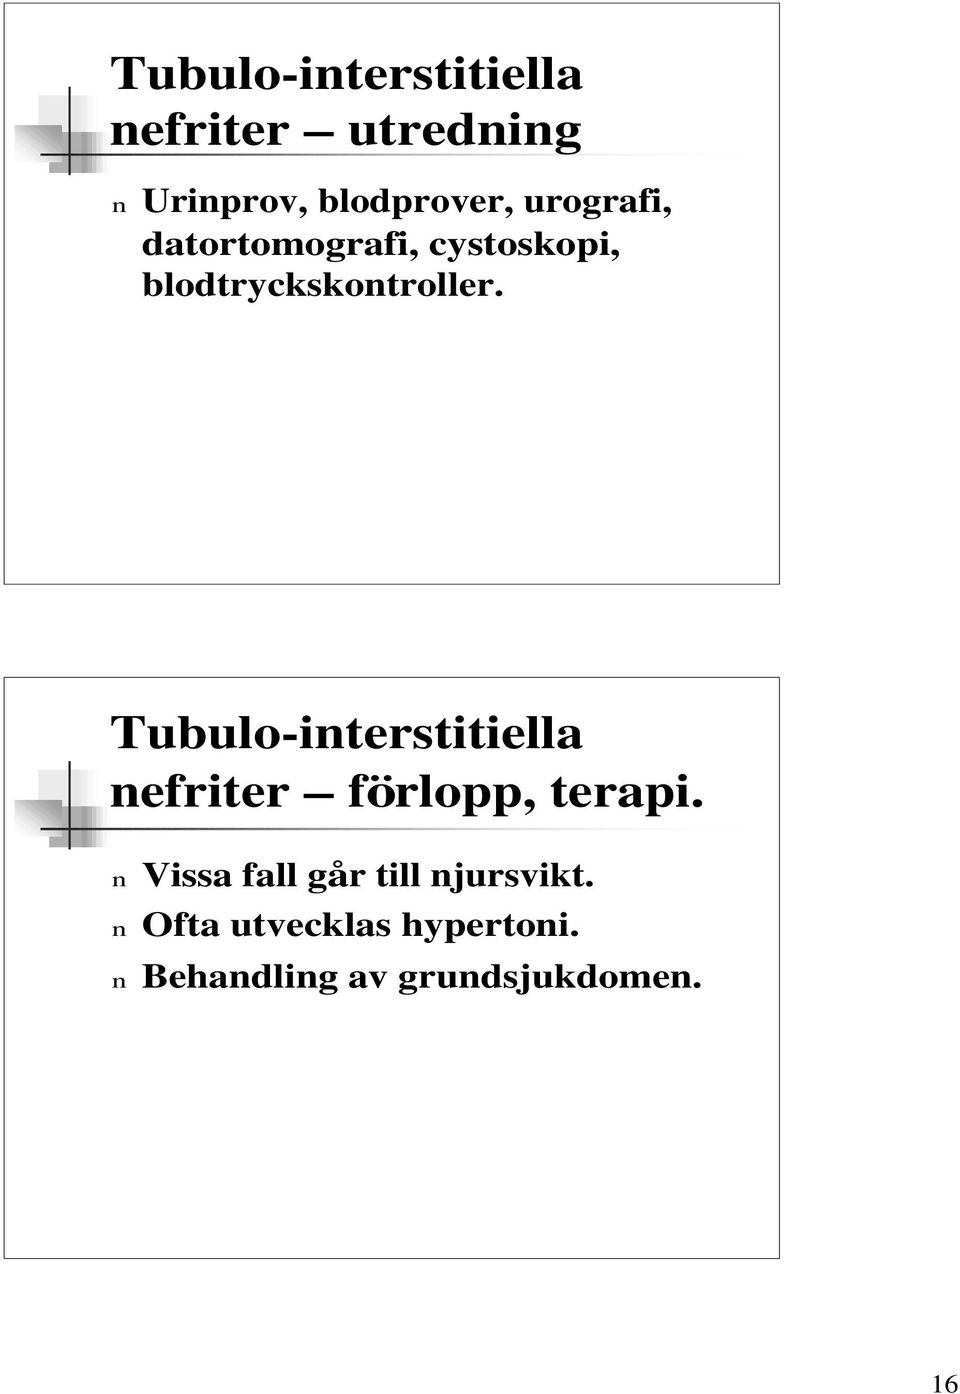 Tubulo-interstitiella nefriter förlopp, terapi.